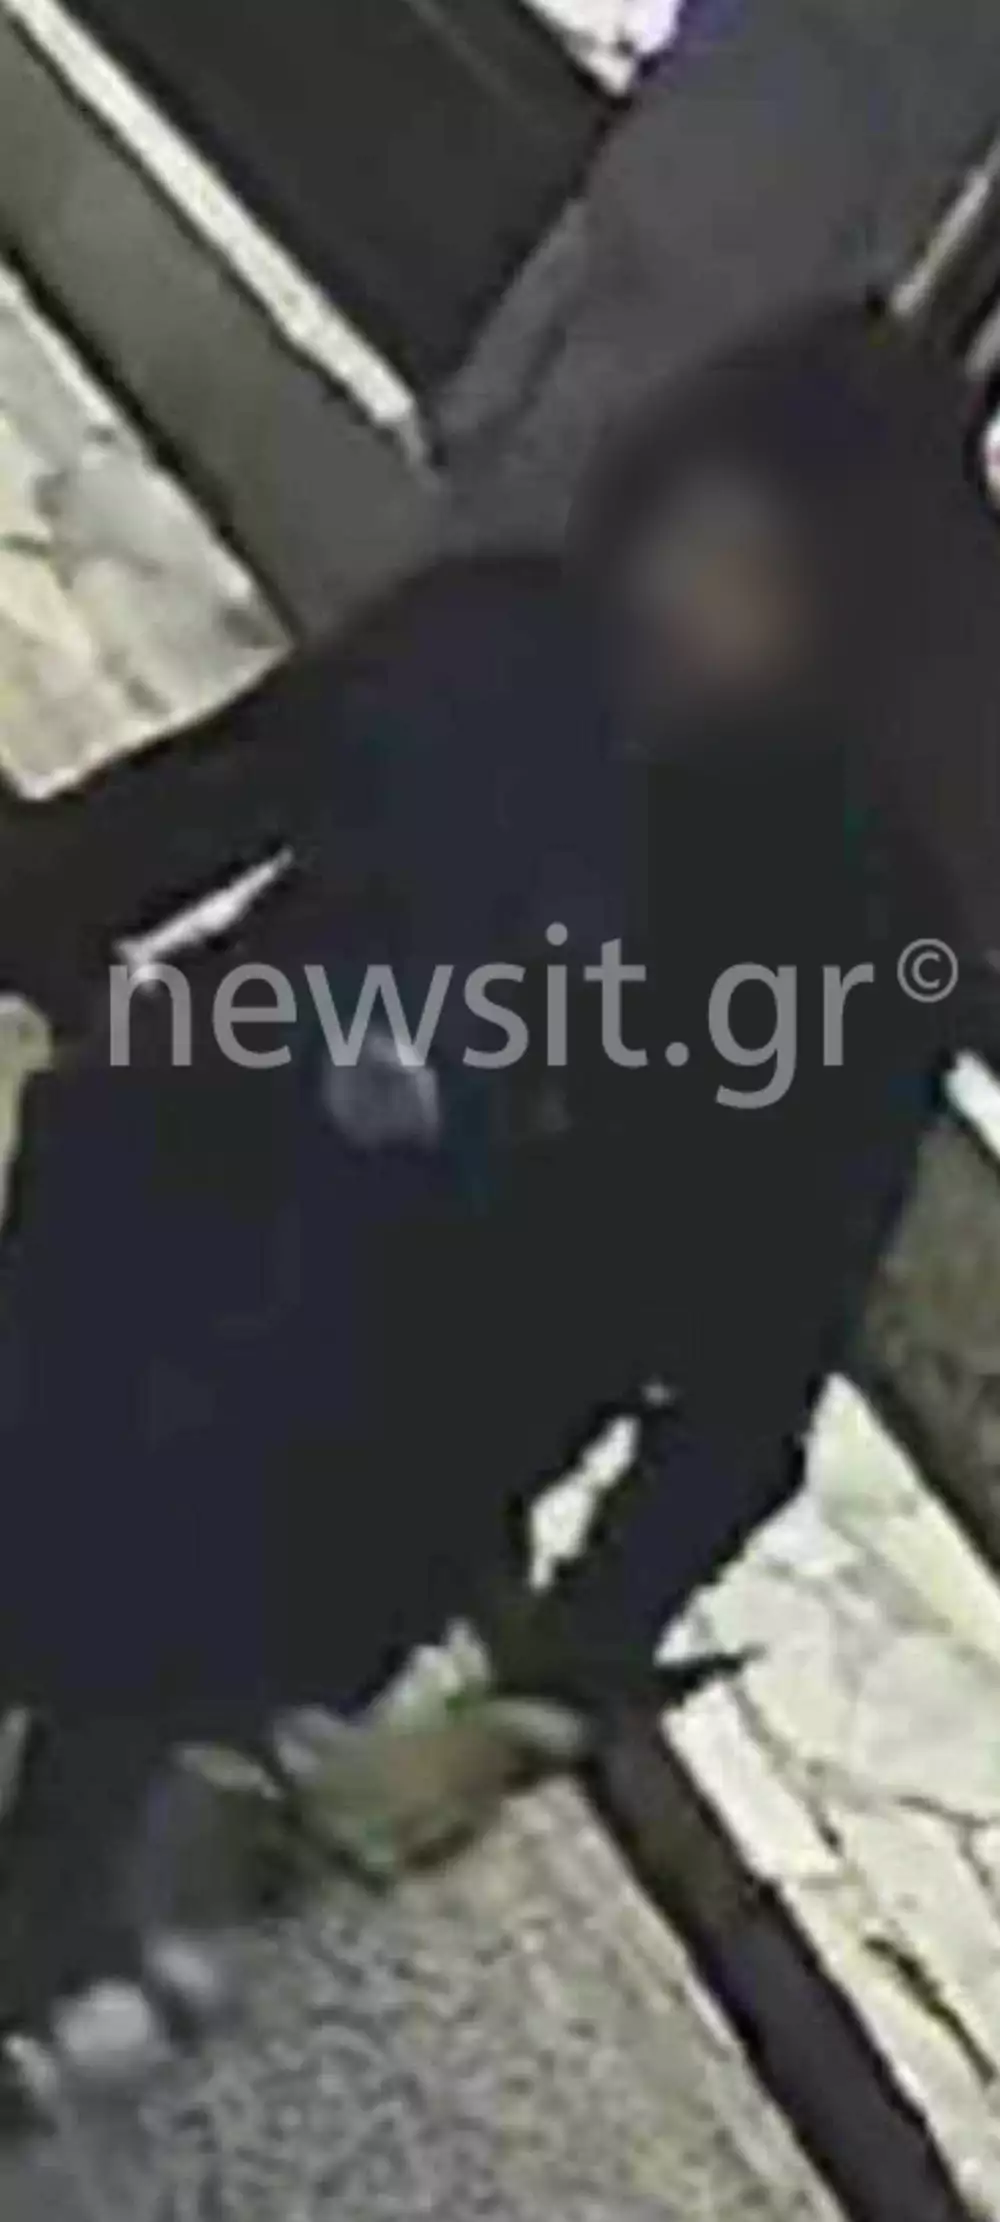 Αράχωβα: Φωτογραφίες ντοκουμέντο με άνδρα σε απόσταση αναπνοής από το χάσκι το βράδυ της επίθεσης